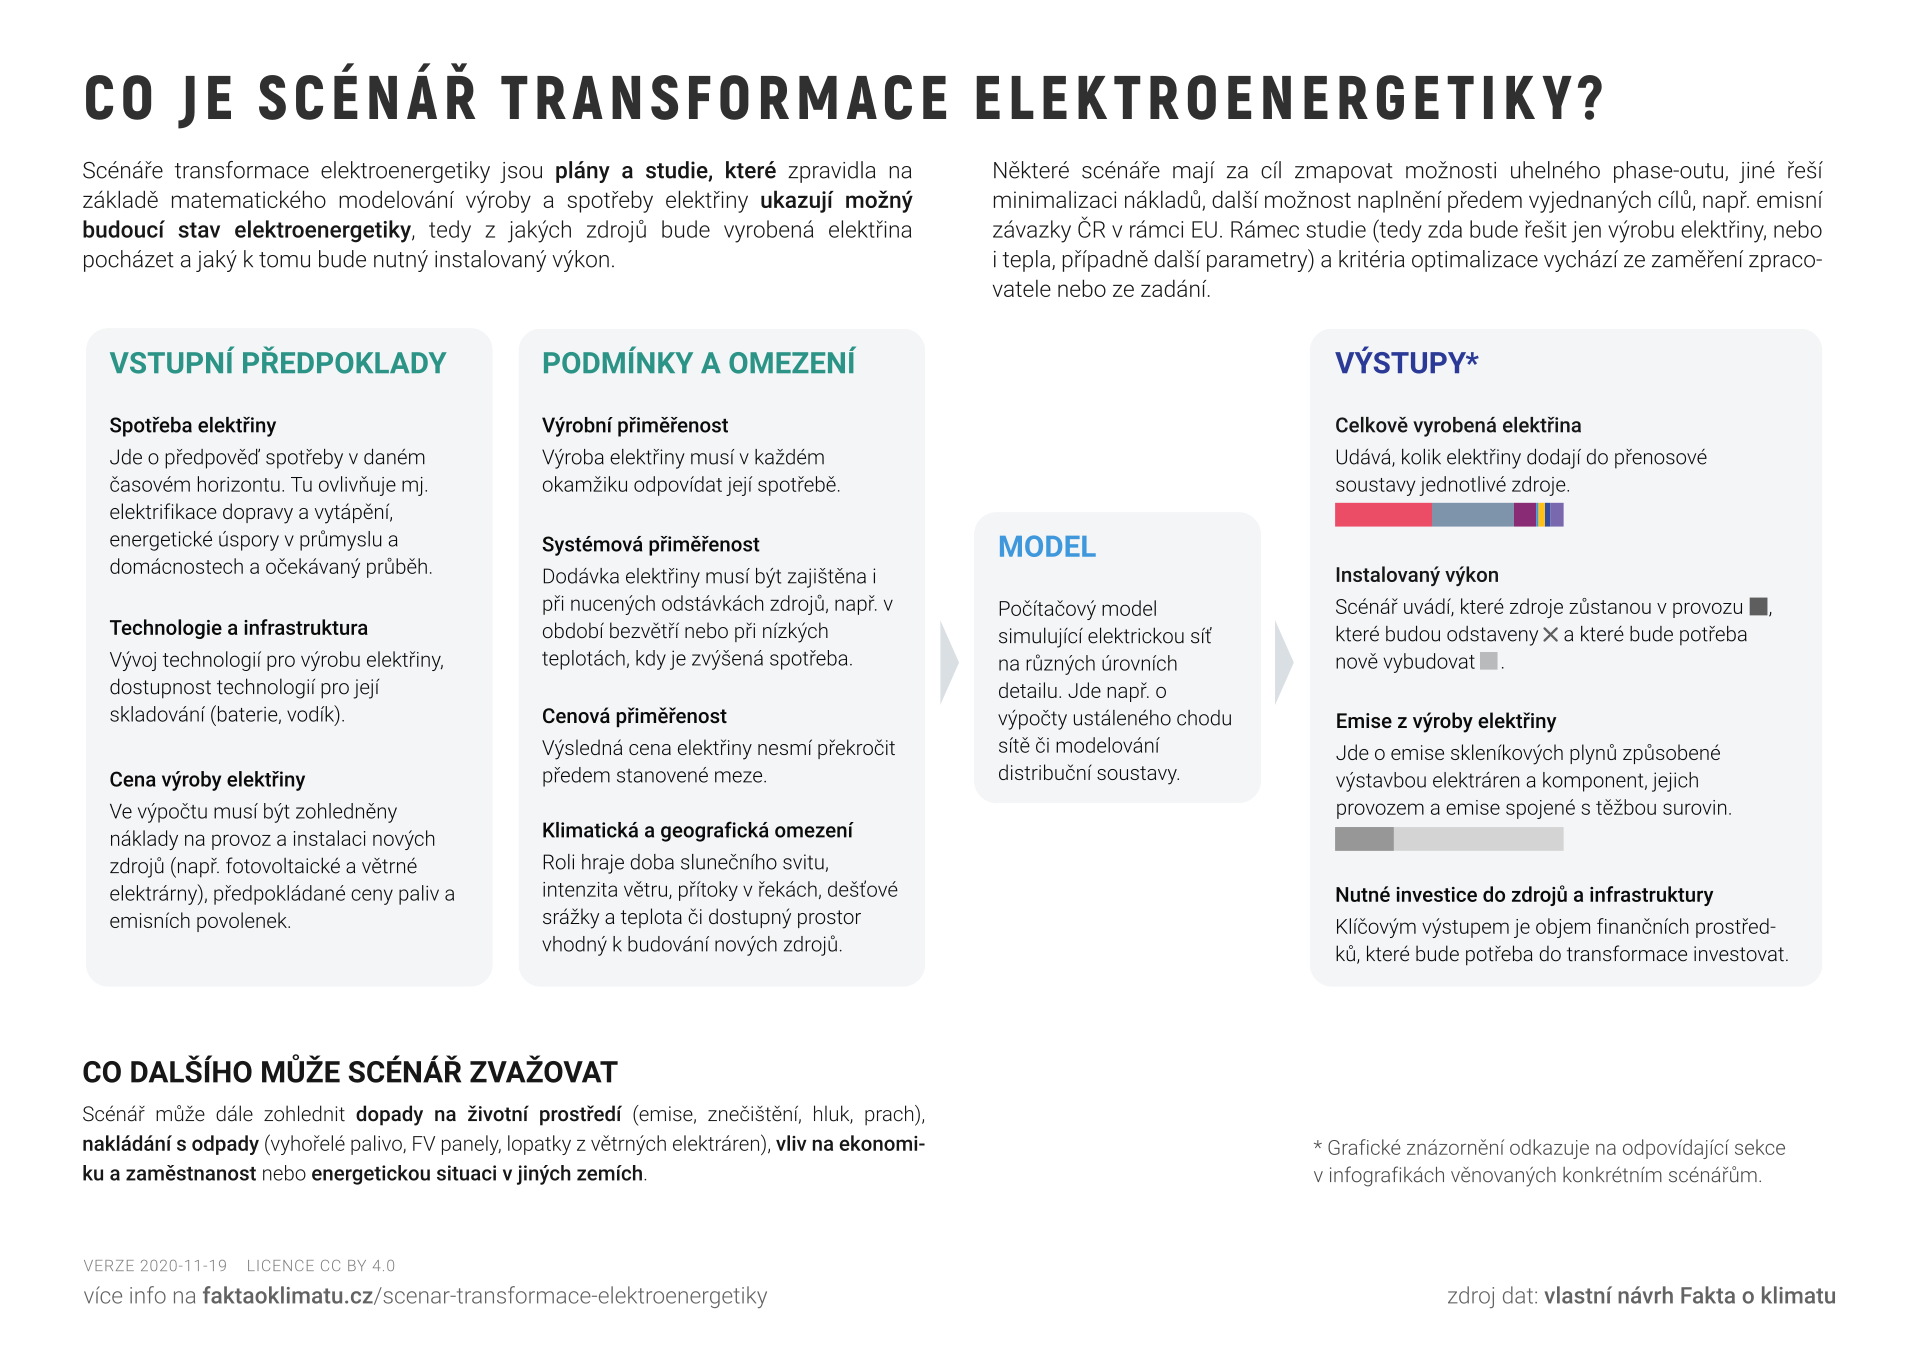 Co je scénář transformace elektroenergetiky